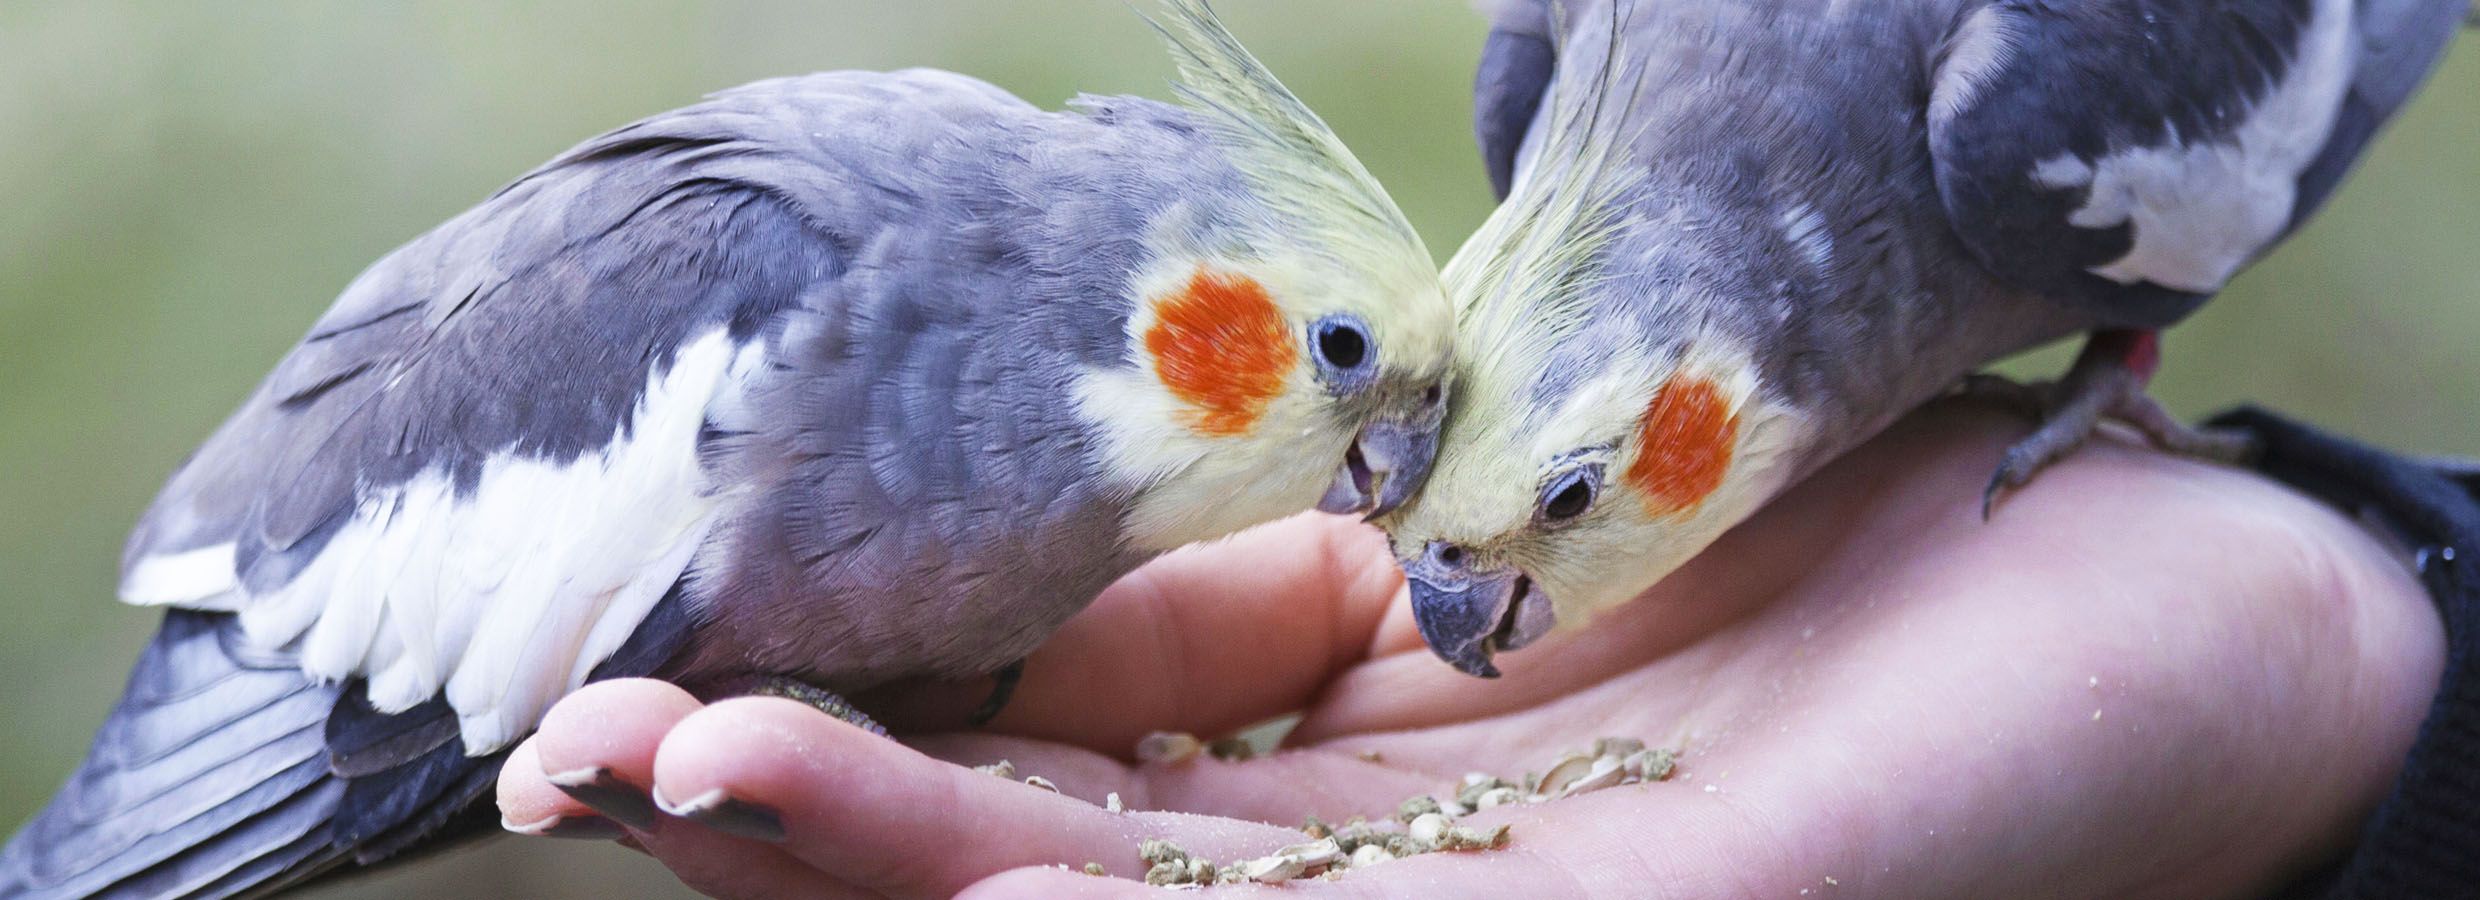 Pet Parrot Guide: What Do Parrots Eat?